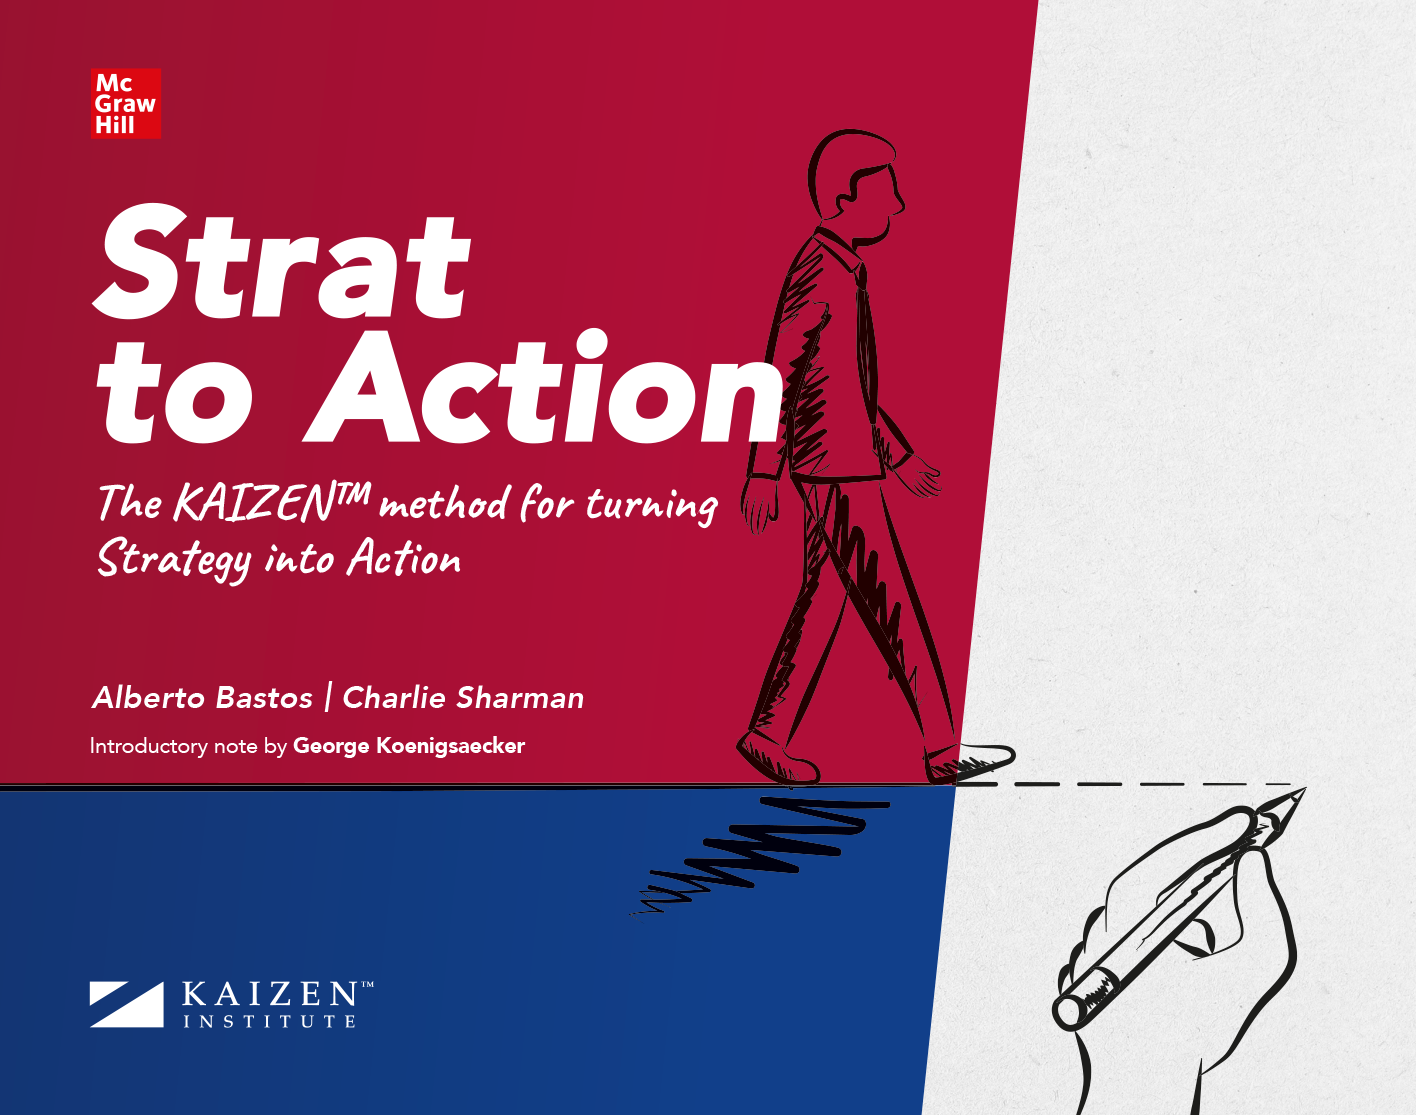 Strat to action. KAIZEN method. ING